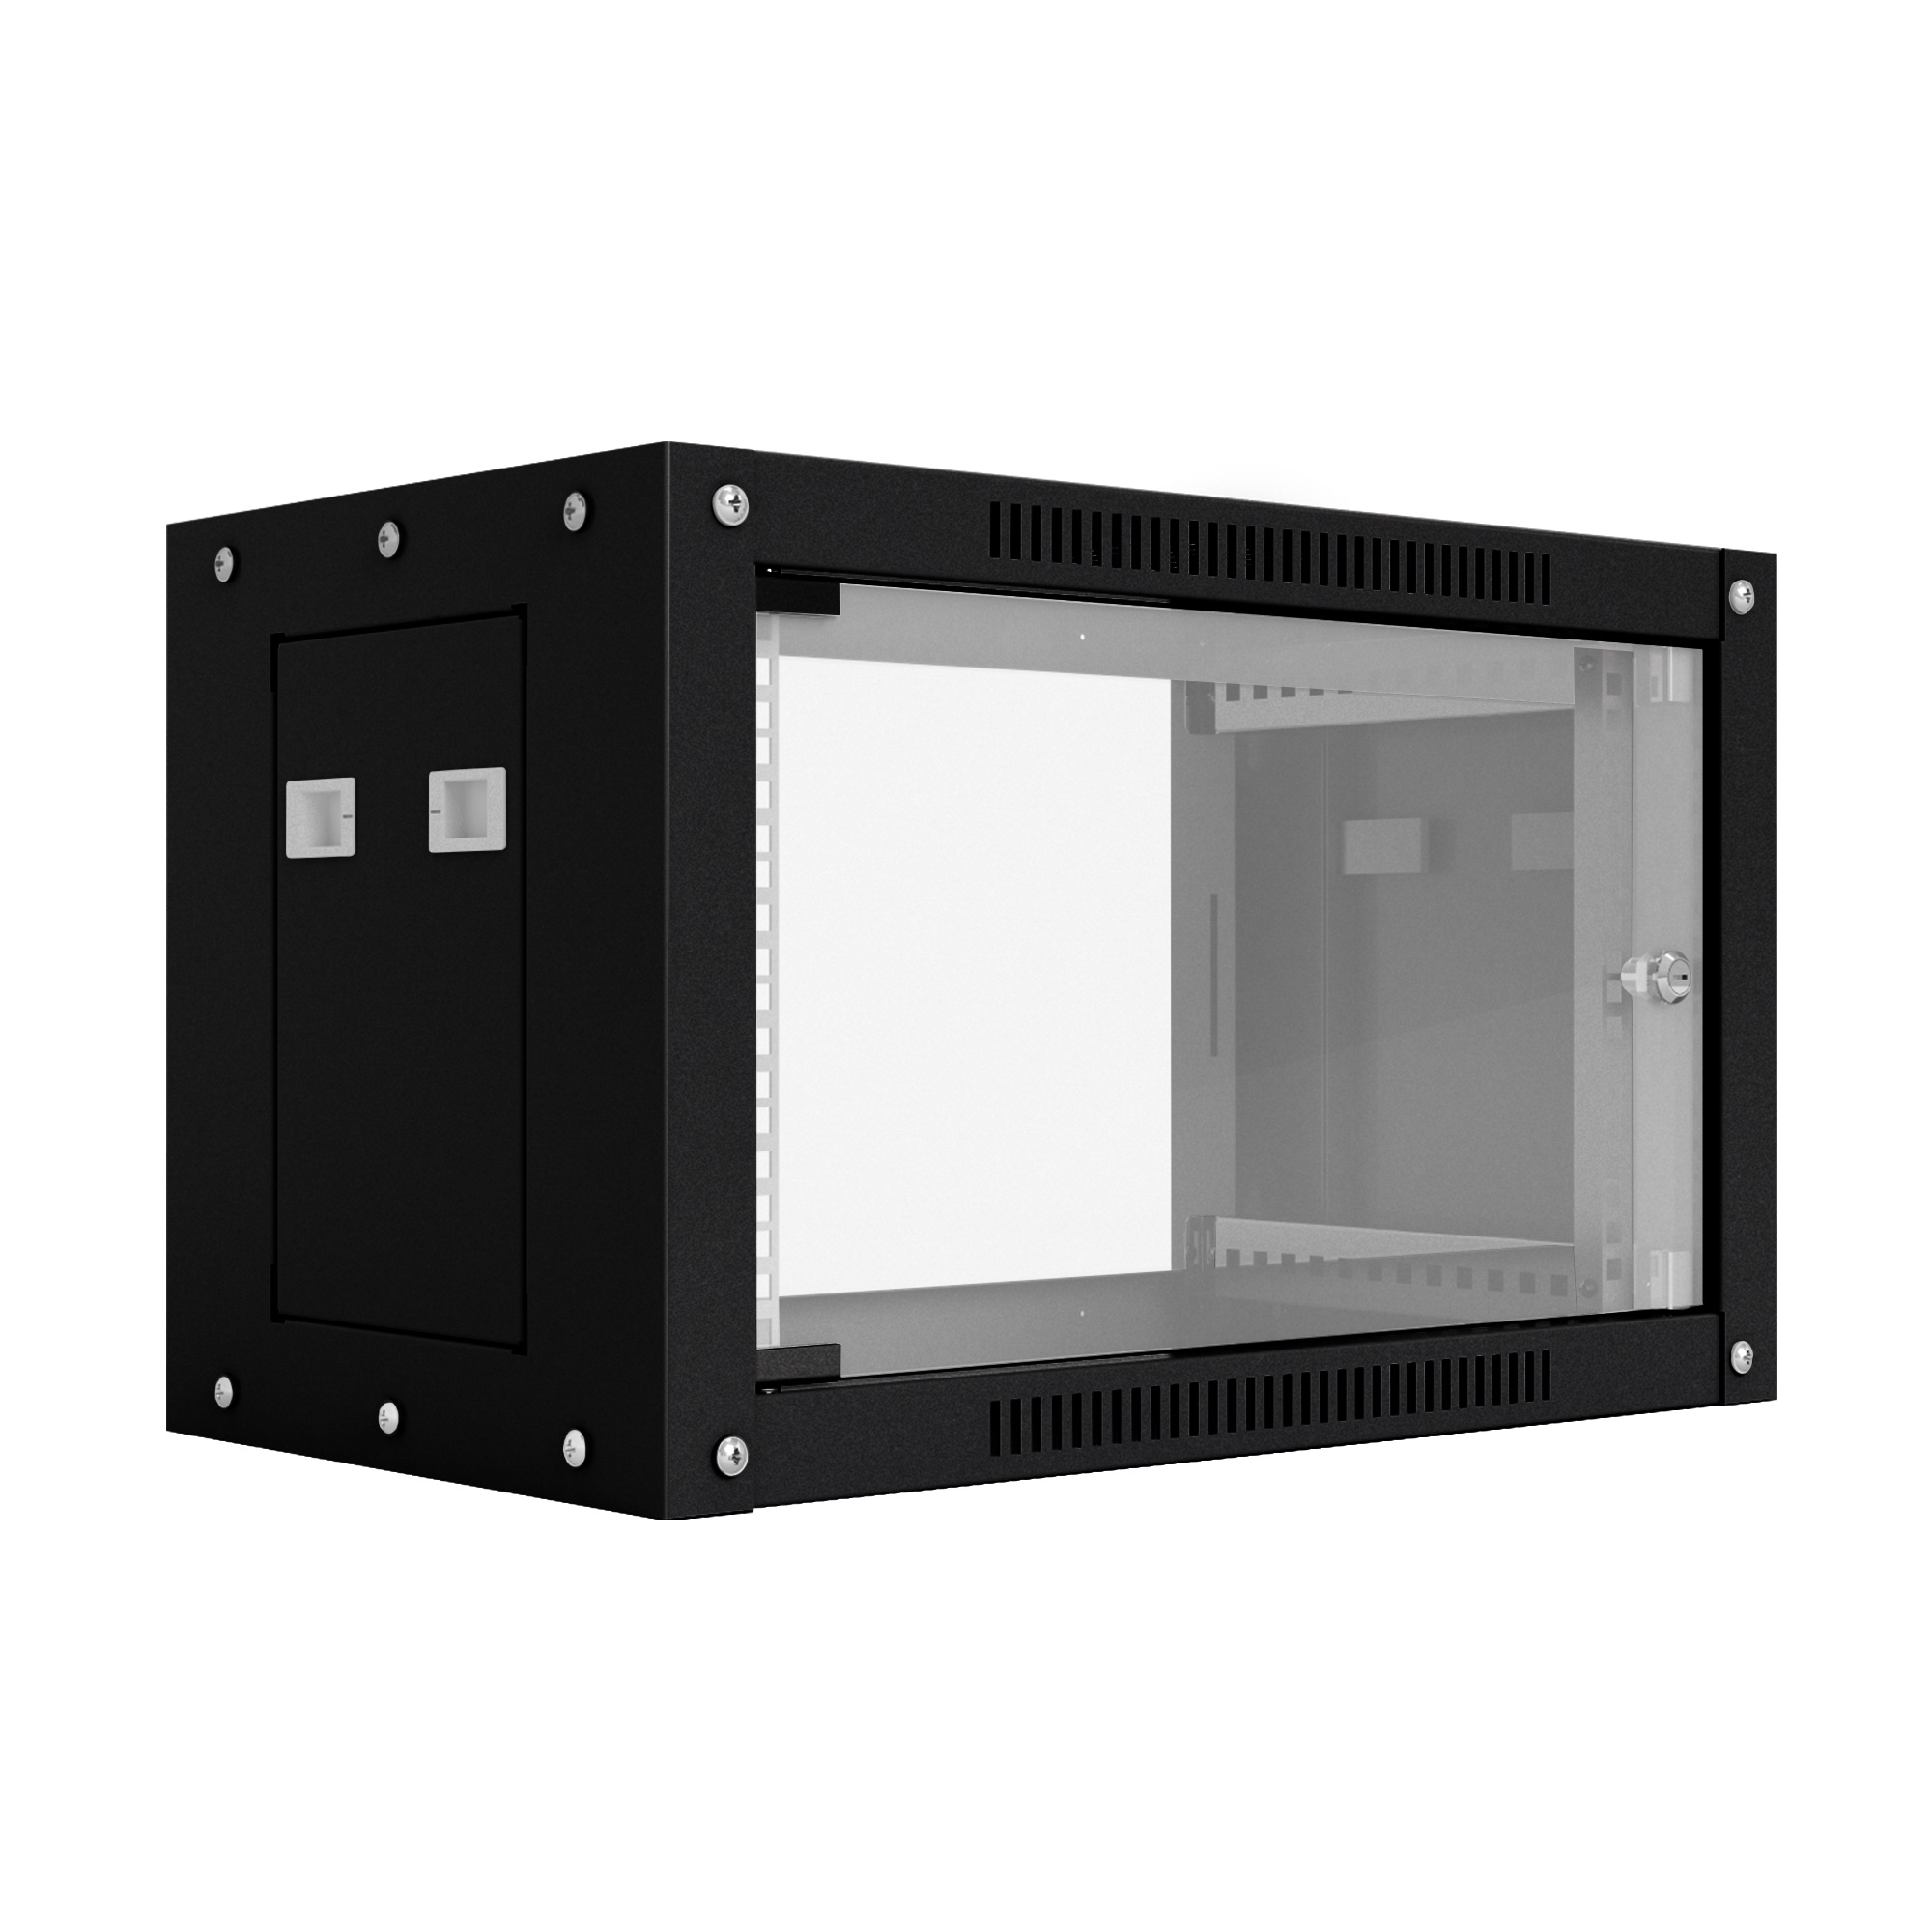 Шкаф настенный телекоммуникационный NTSS WS 9U 600х450х500мм, 2 профиля 19, дверь стеклянная, боковые стенки съемные, разобранный, черный RAL 9005